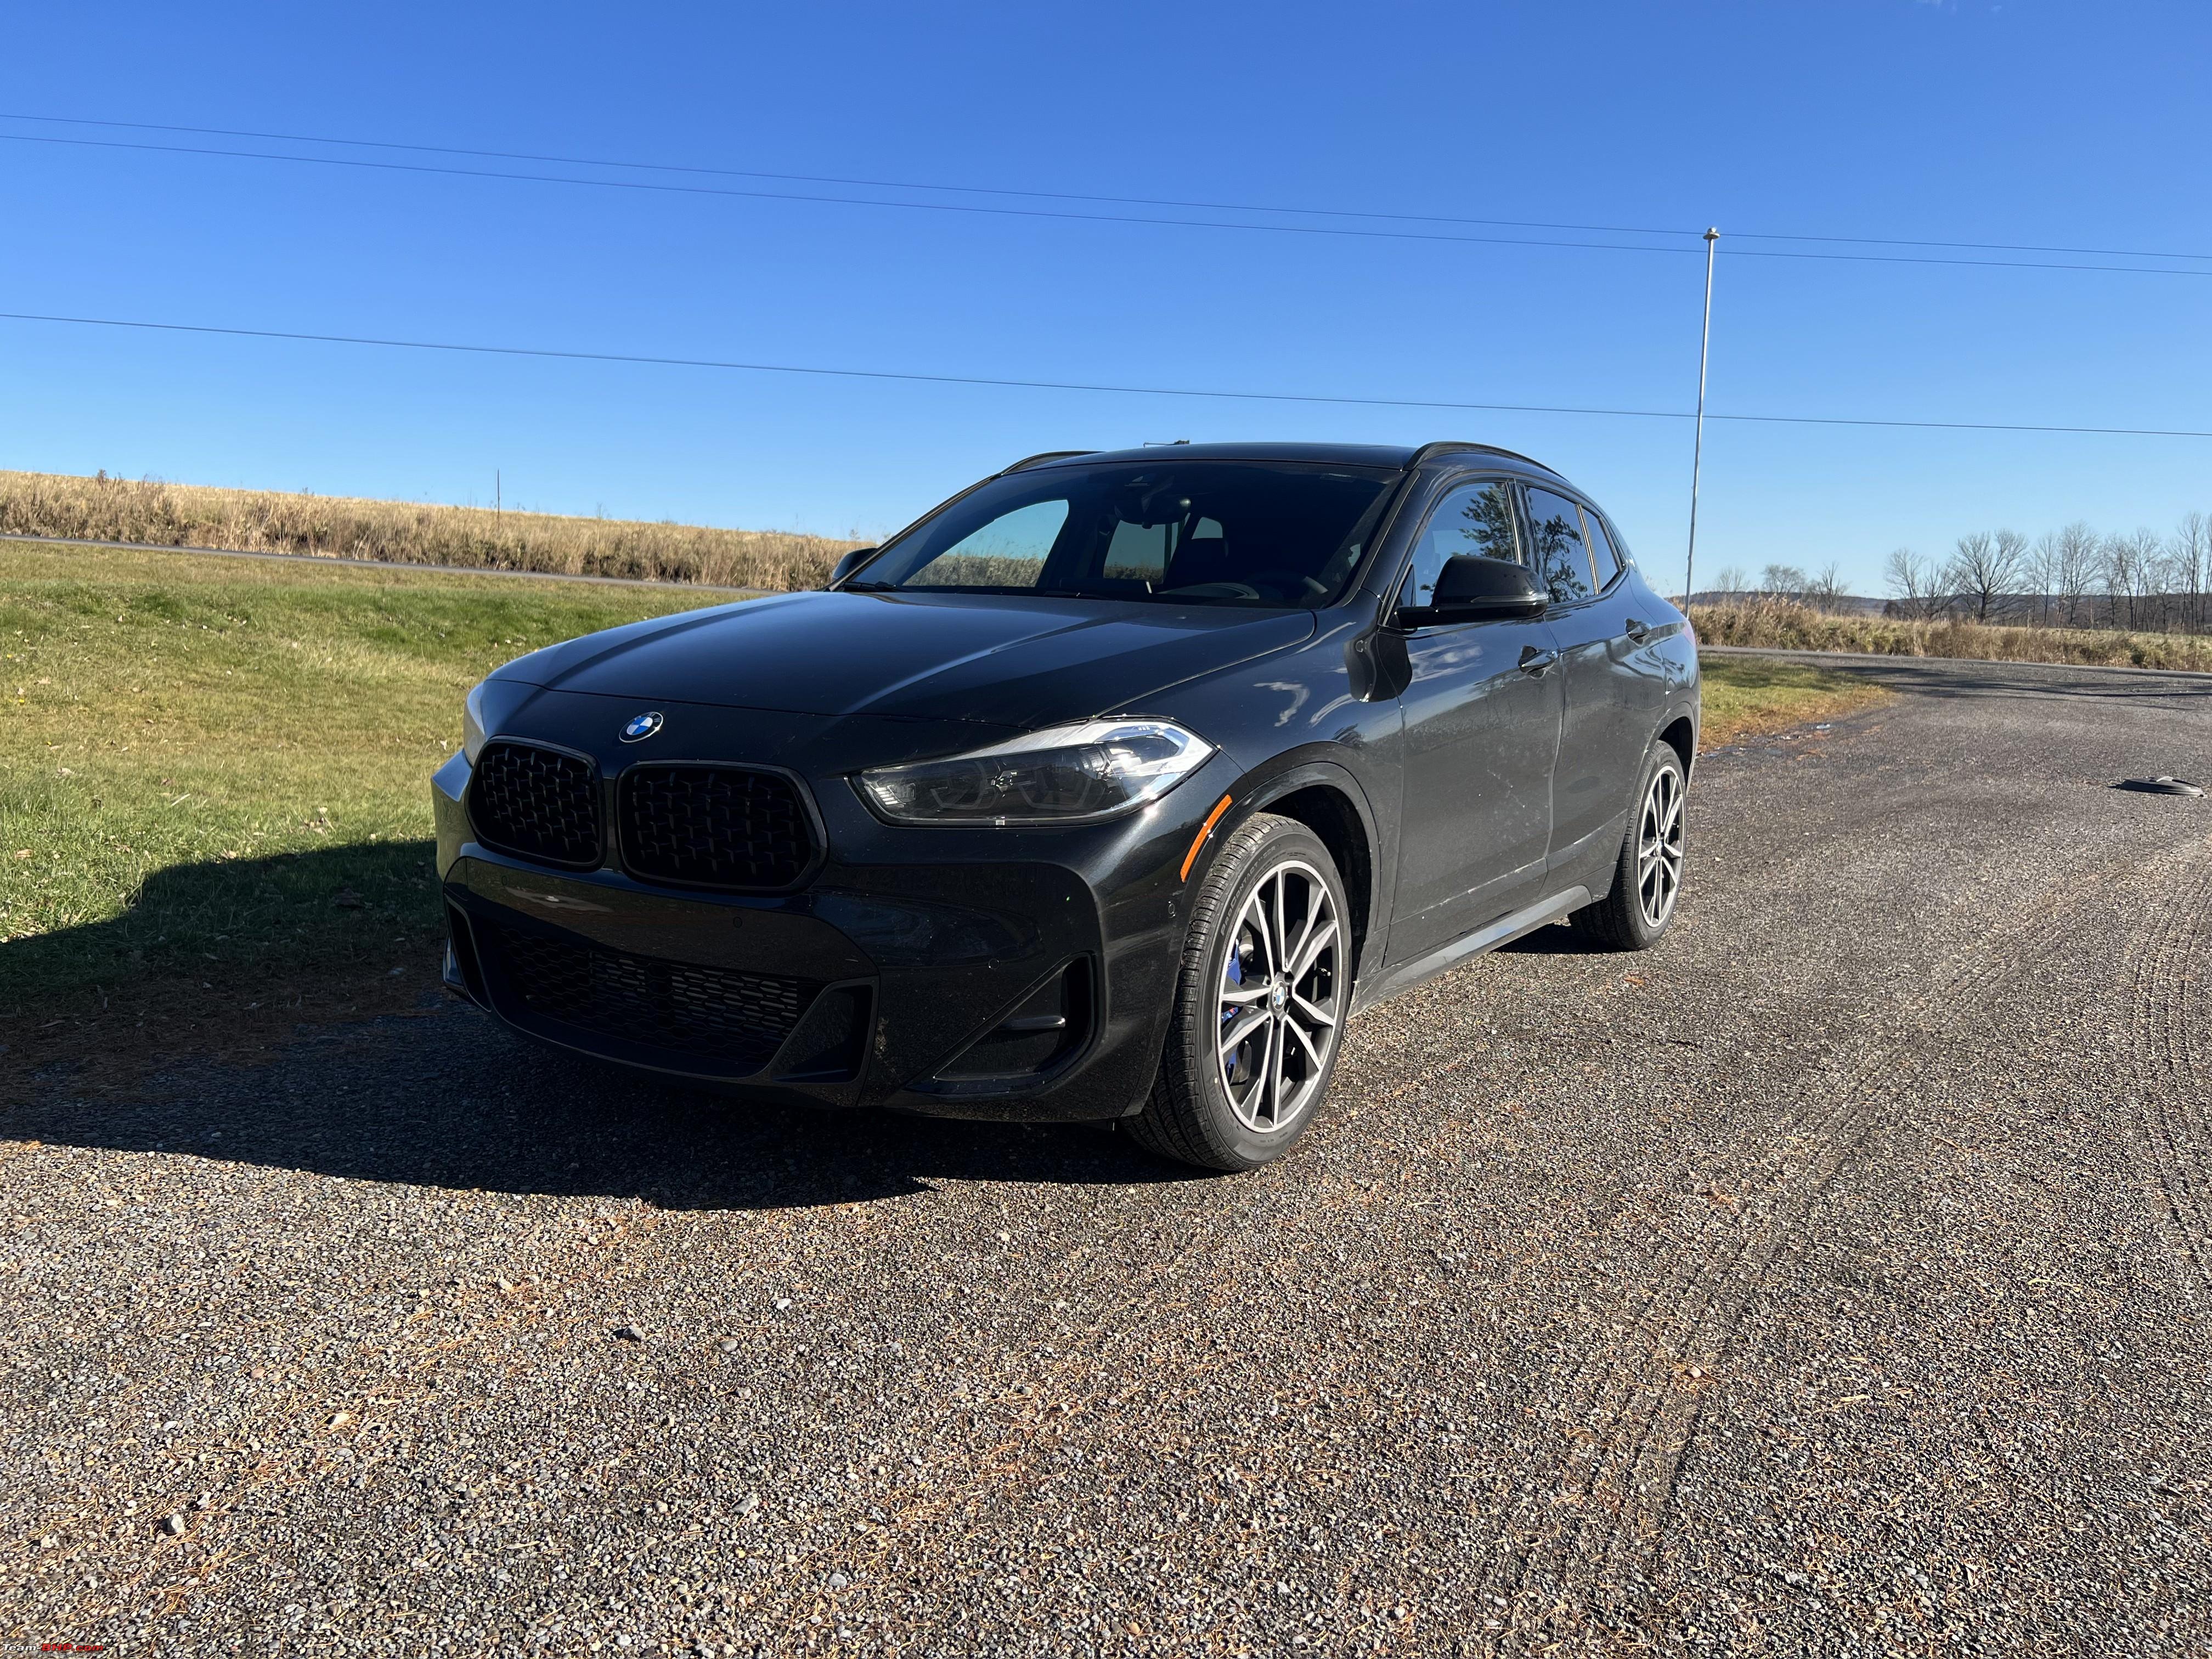 BMW /// M LOGO GARAGE SIGN 12 X 36 INCH – New Jersey Bimmers